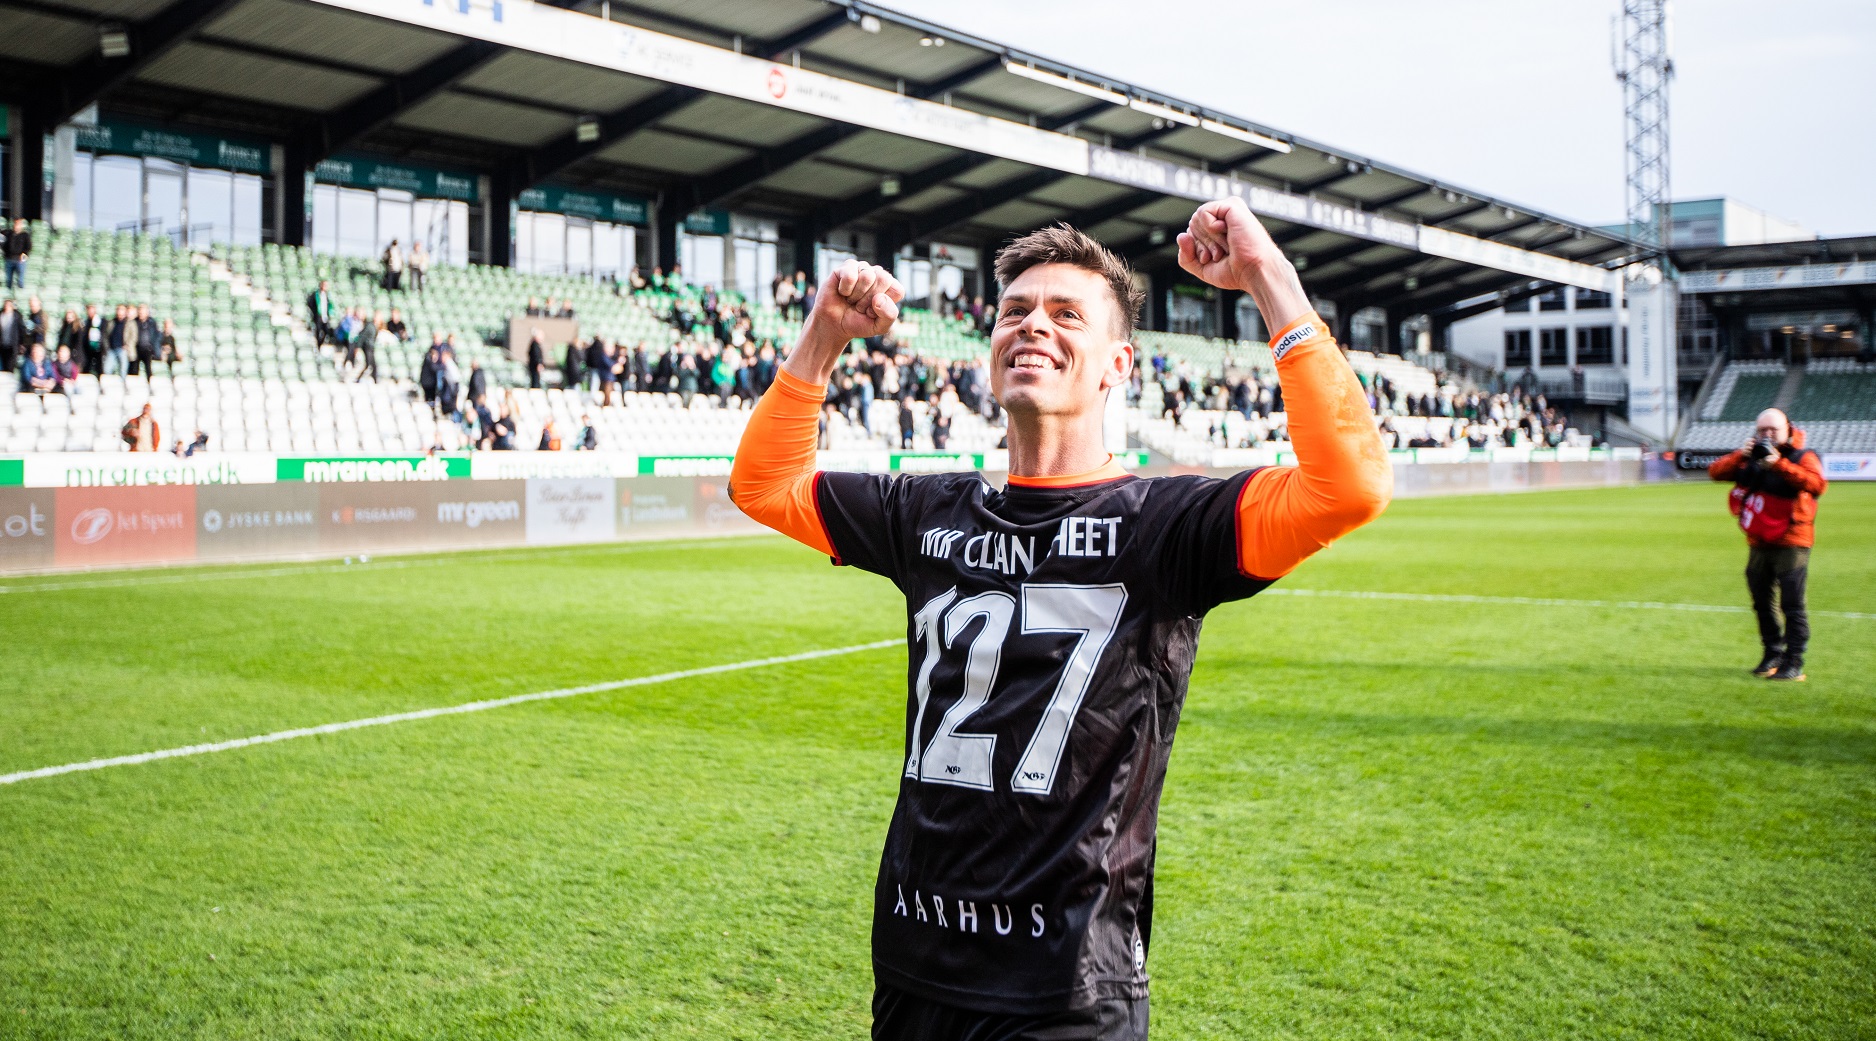 Jesper Hansen iført en særlig 127 clean sheets trøje på Viborg Stadion.